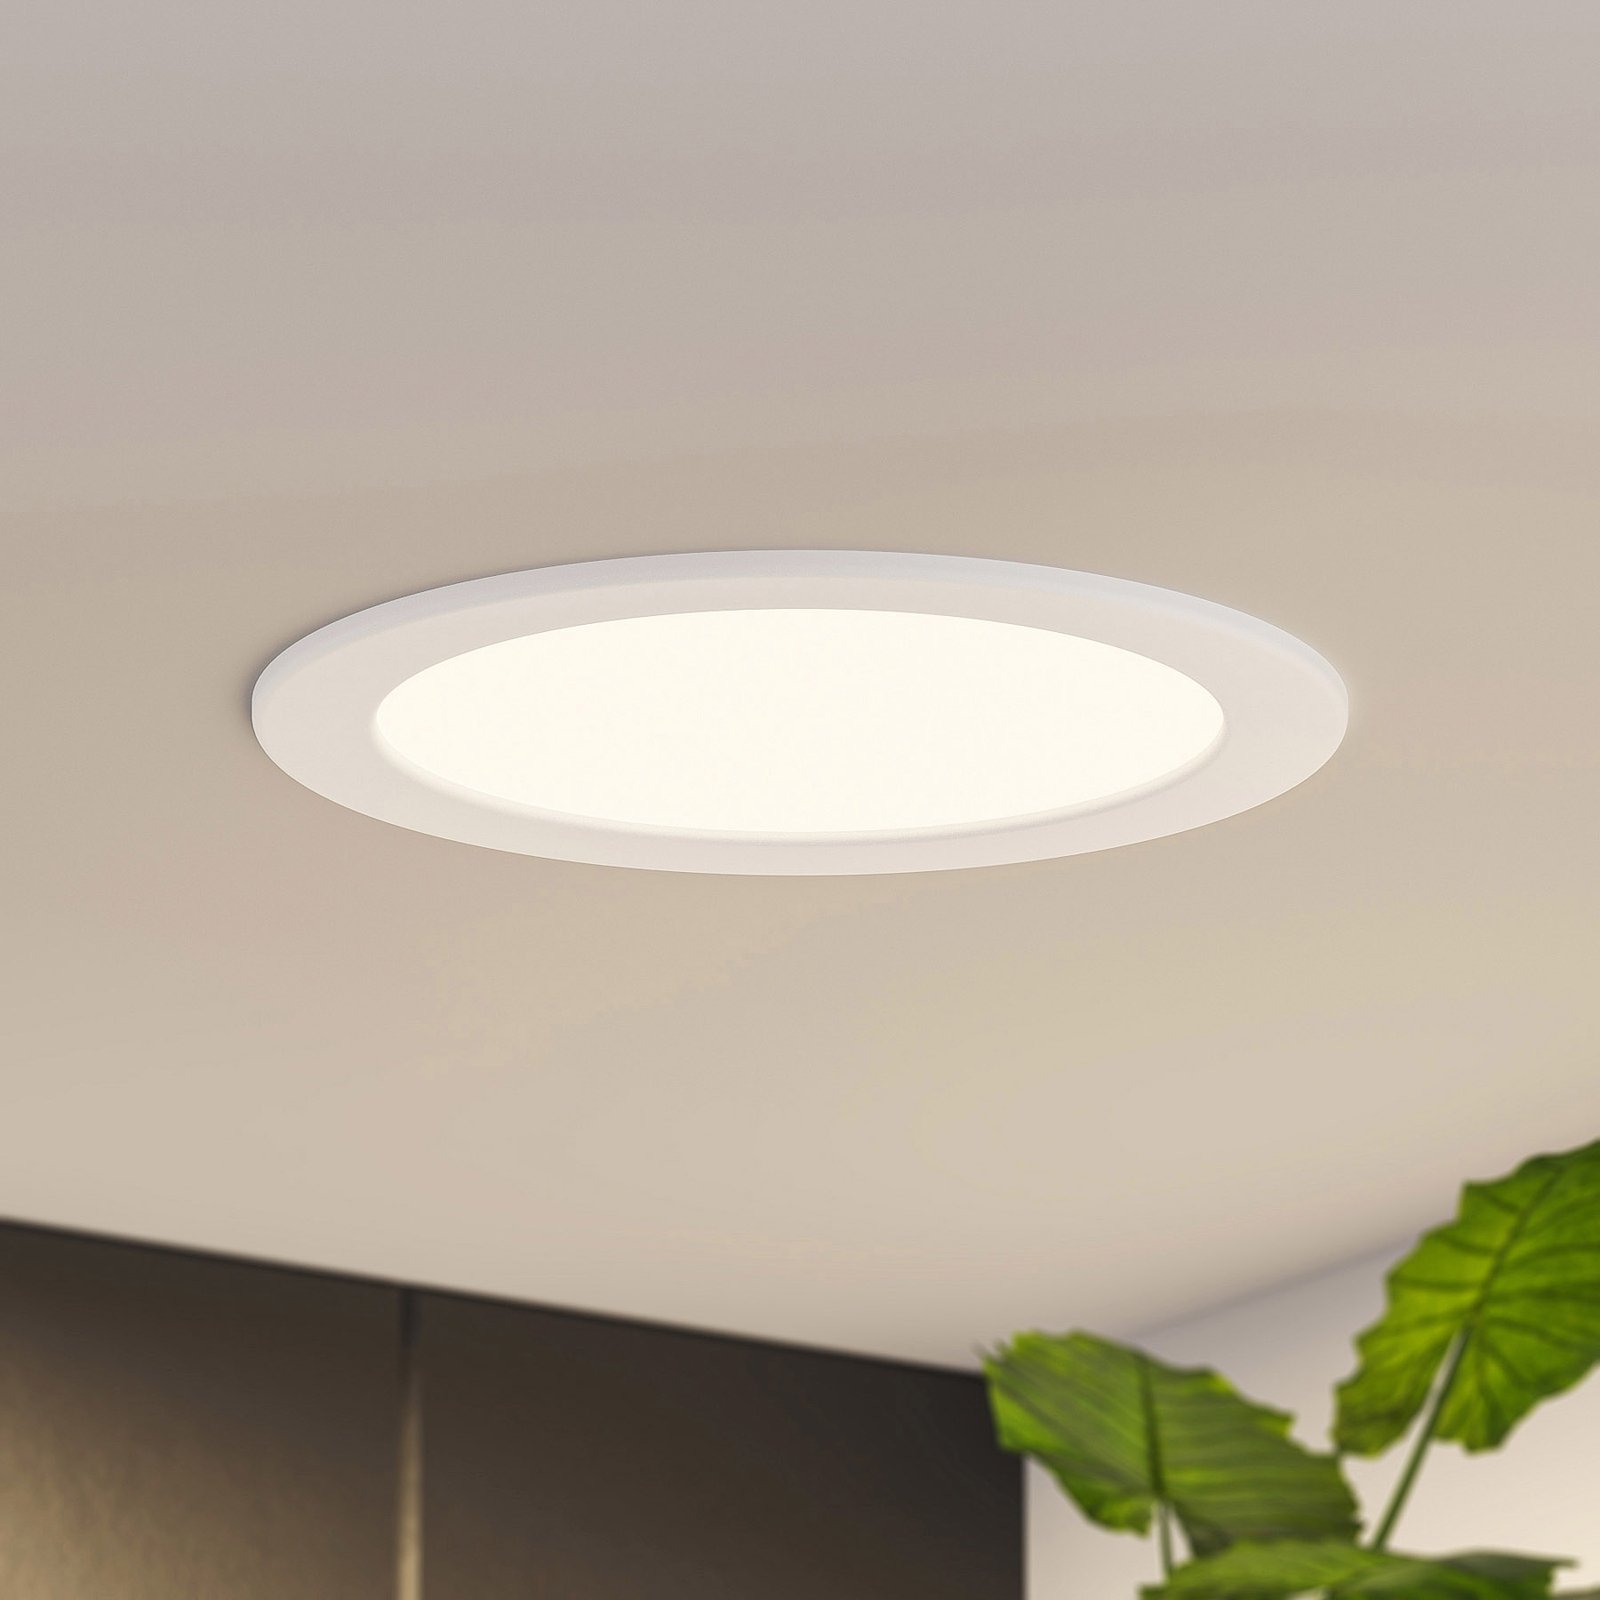 Prios LED svetilka za vgradnjo Cadance, bela, 22 cm, 3 enote, možnost